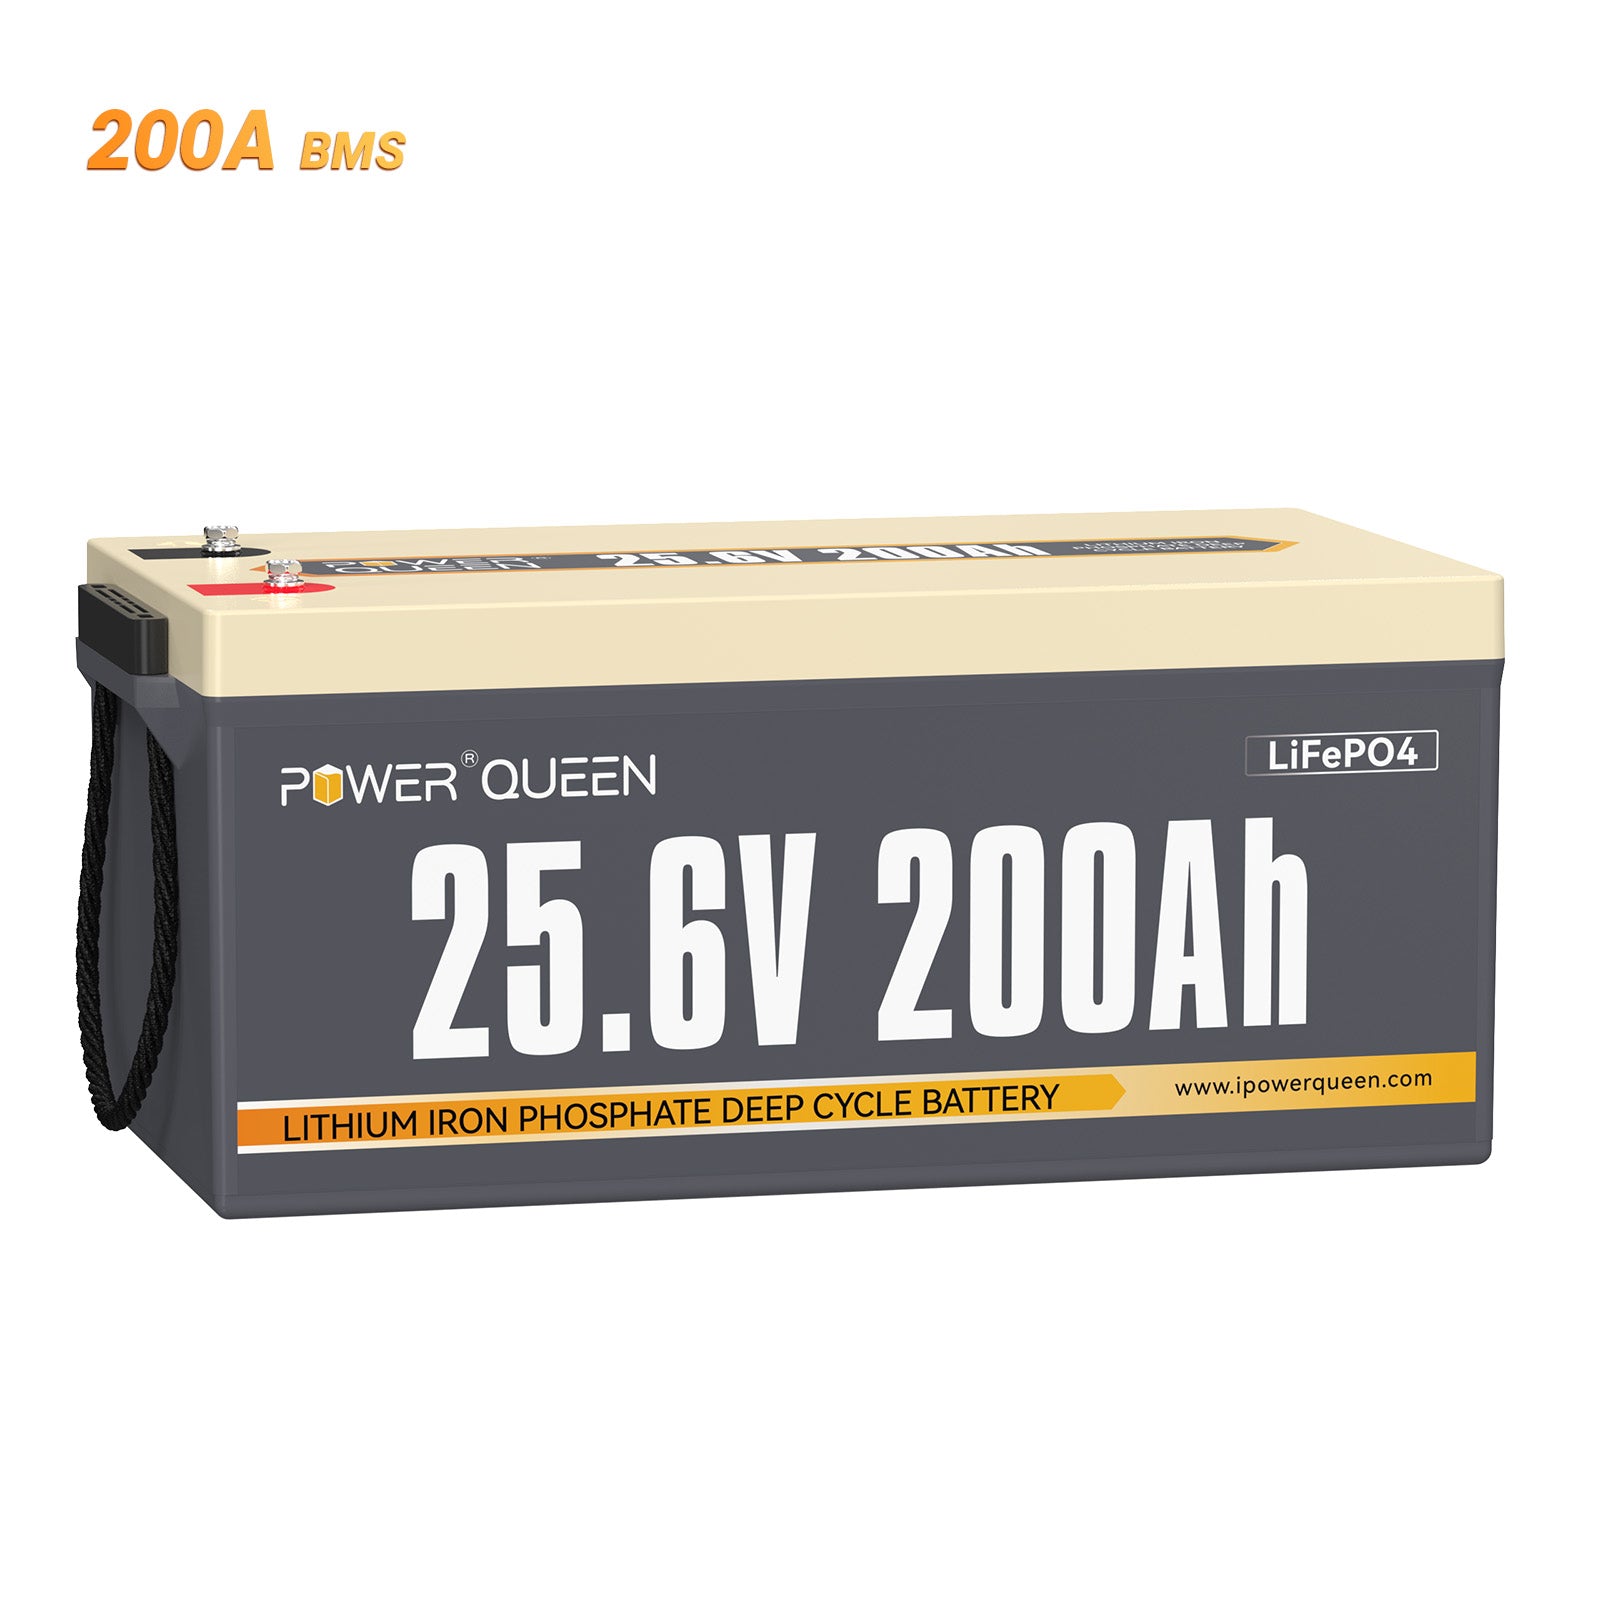 【0% IVA】Batería Power Queen 24V 200Ah LiFePO4, BMS 200A incorporado